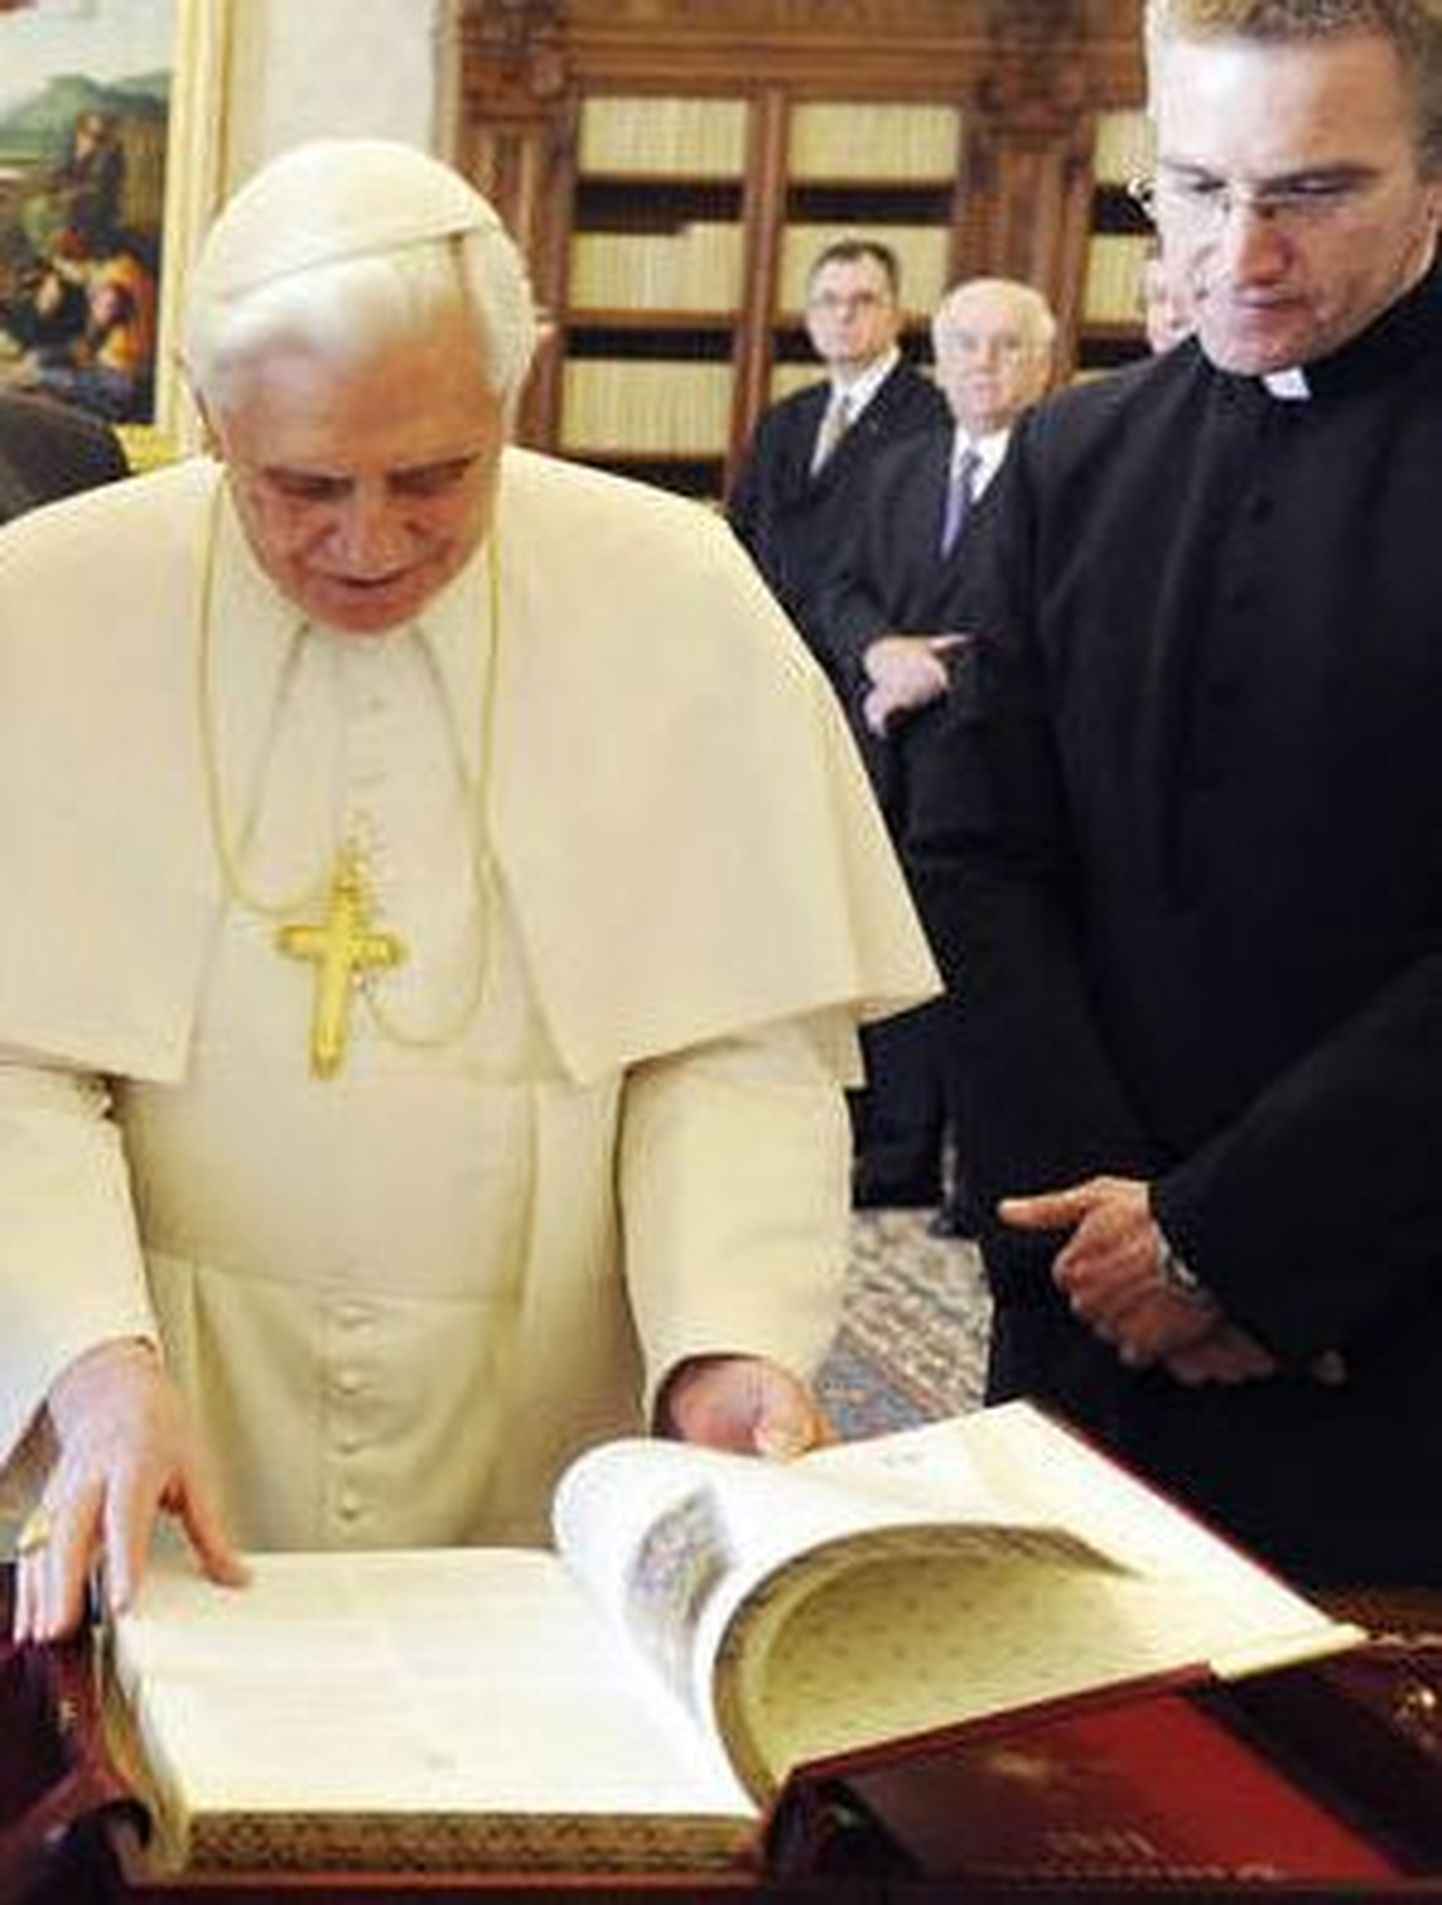 Vatikan avab Dan Browni väidete ümberlükkamiseks salaarhiivi. Fotol paavst Benedictus XVI koos kaaskonnaga